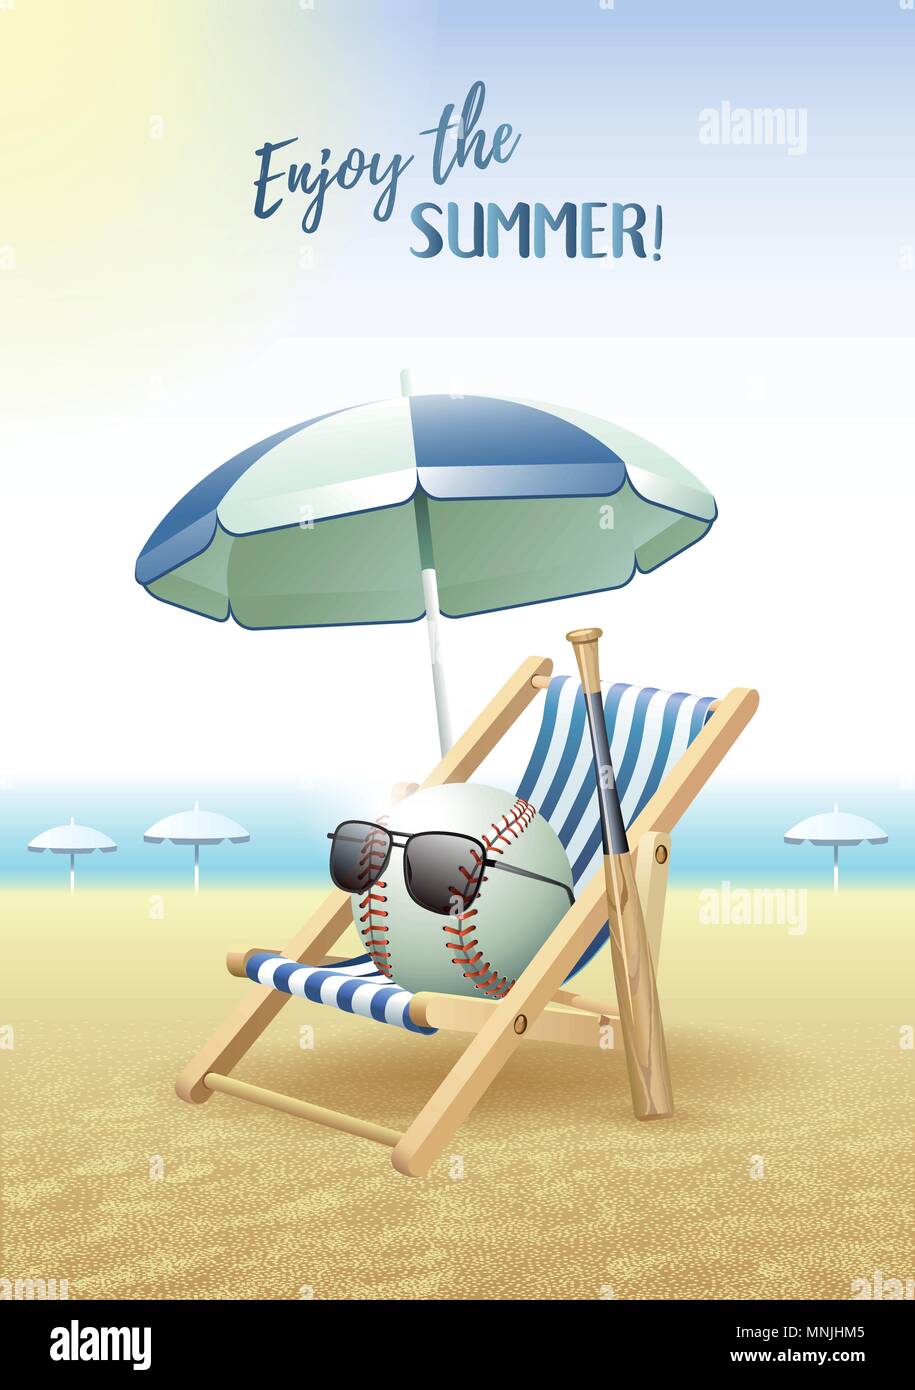 Disfruta del verano! La tarjeta de los deportes. Bola de béisbol con gafas de sol, playa, Sombrilla, tumbona y bate de madera sobre la arena de la playa. Ilustración vectorial. Ilustración del Vector